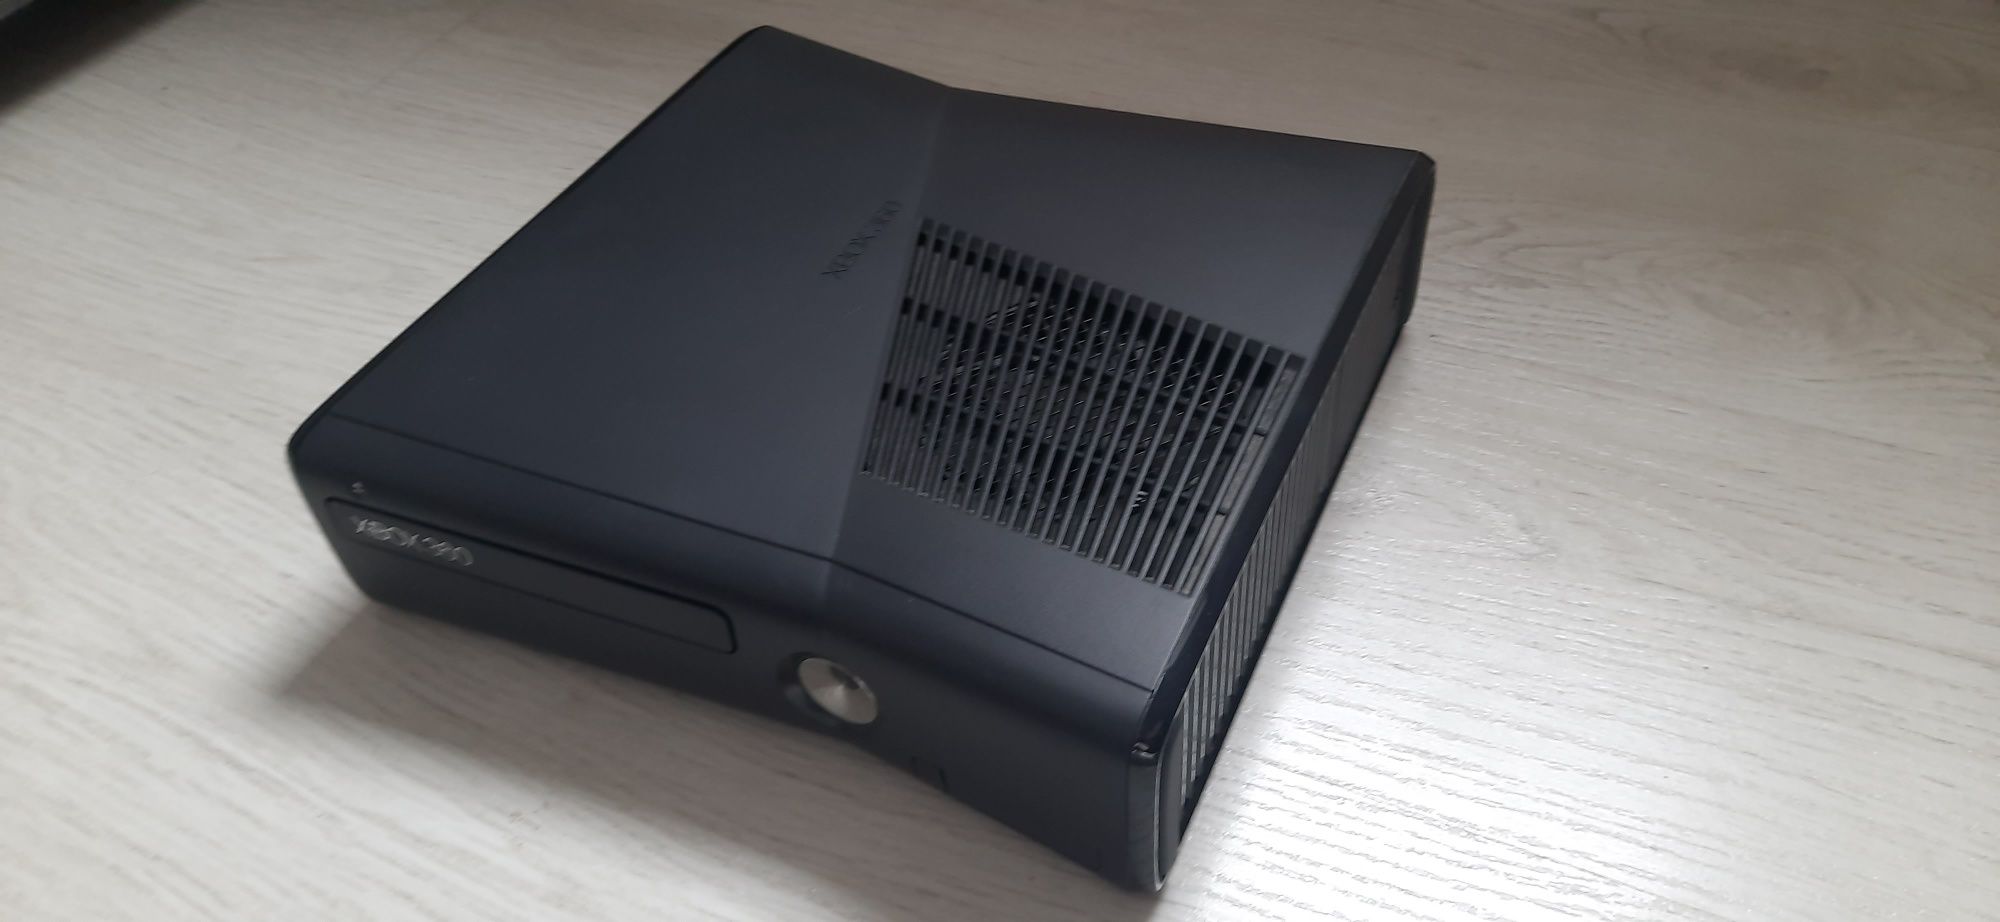 Konsola Xbox 360 z jednym padem plus Kinect - stan idealny

Konsola